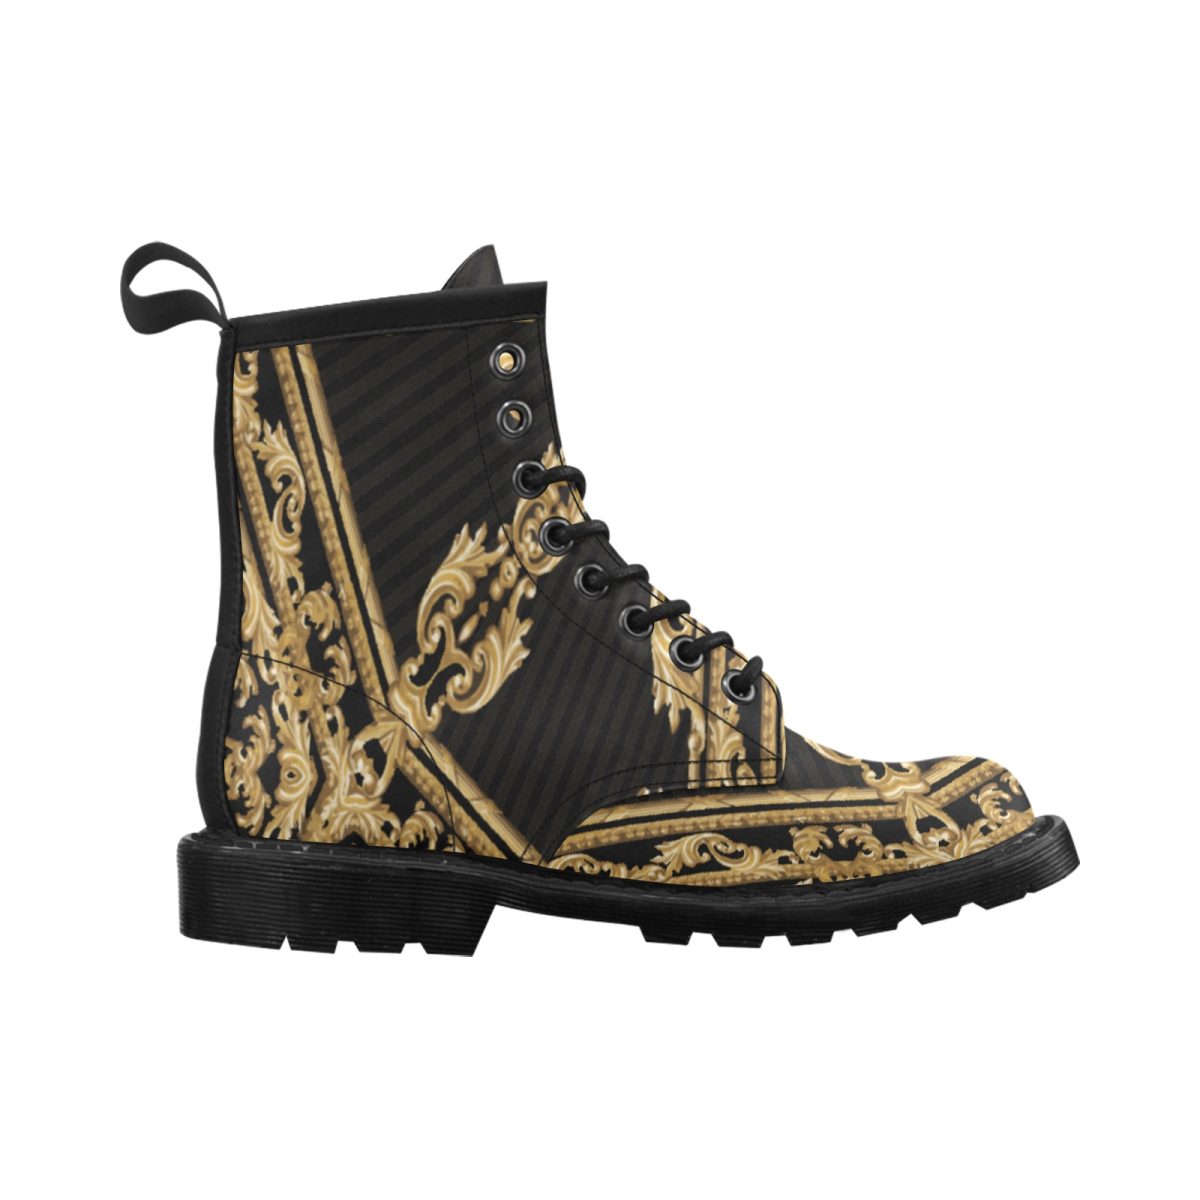 Boots | combat boots doc marten sandals rain boots